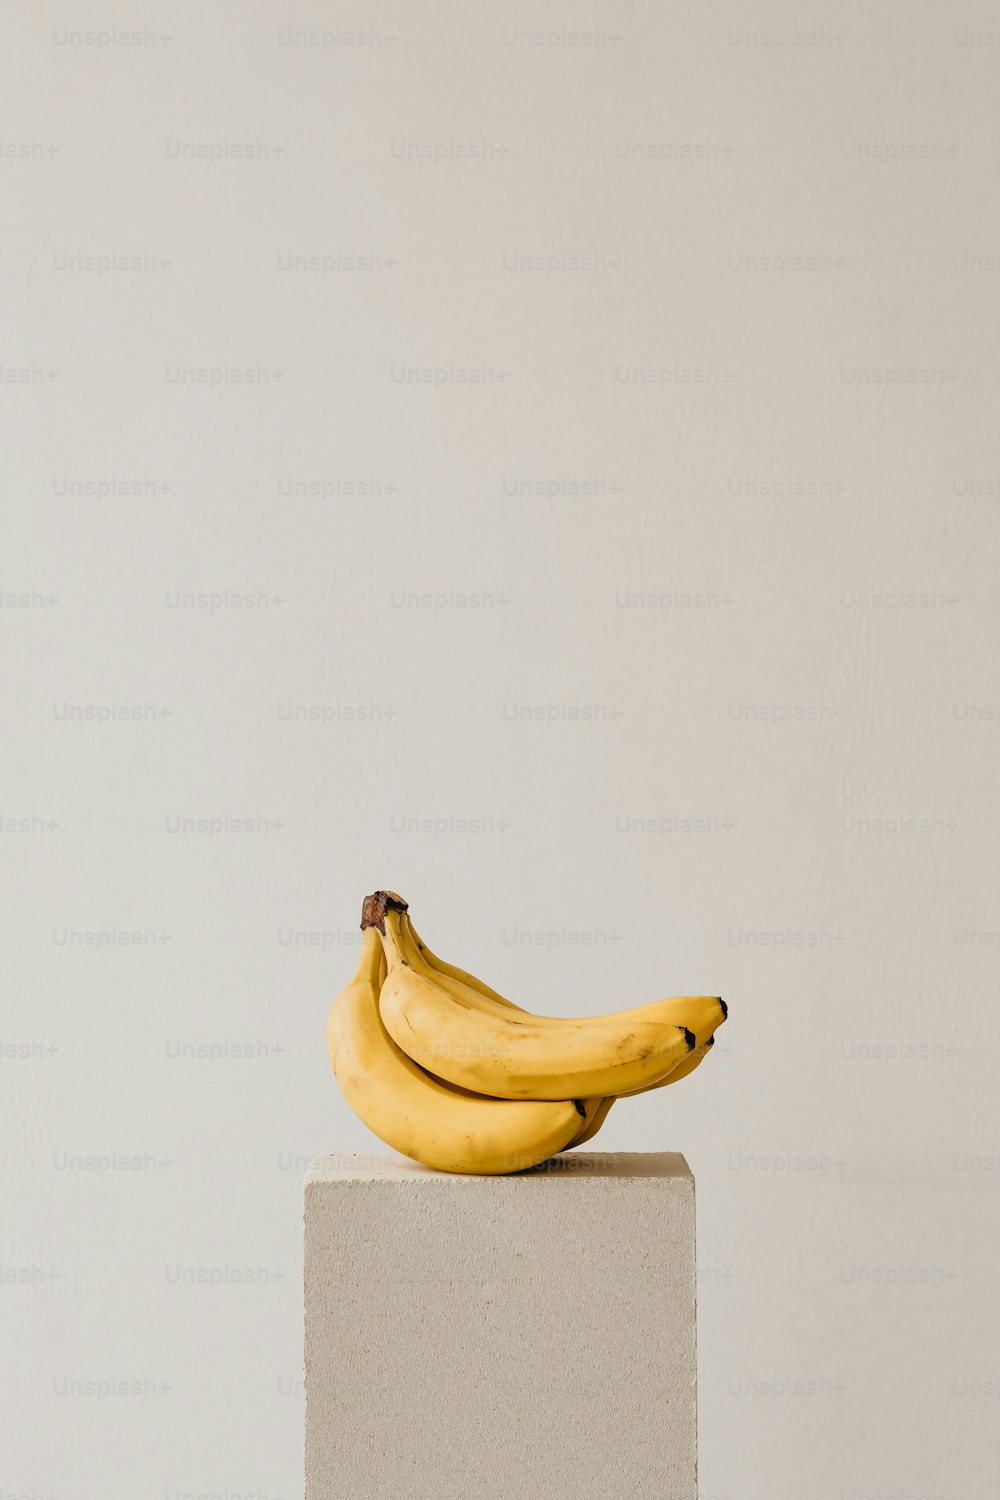 um cacho de bananas sentado em cima de um bloco branco